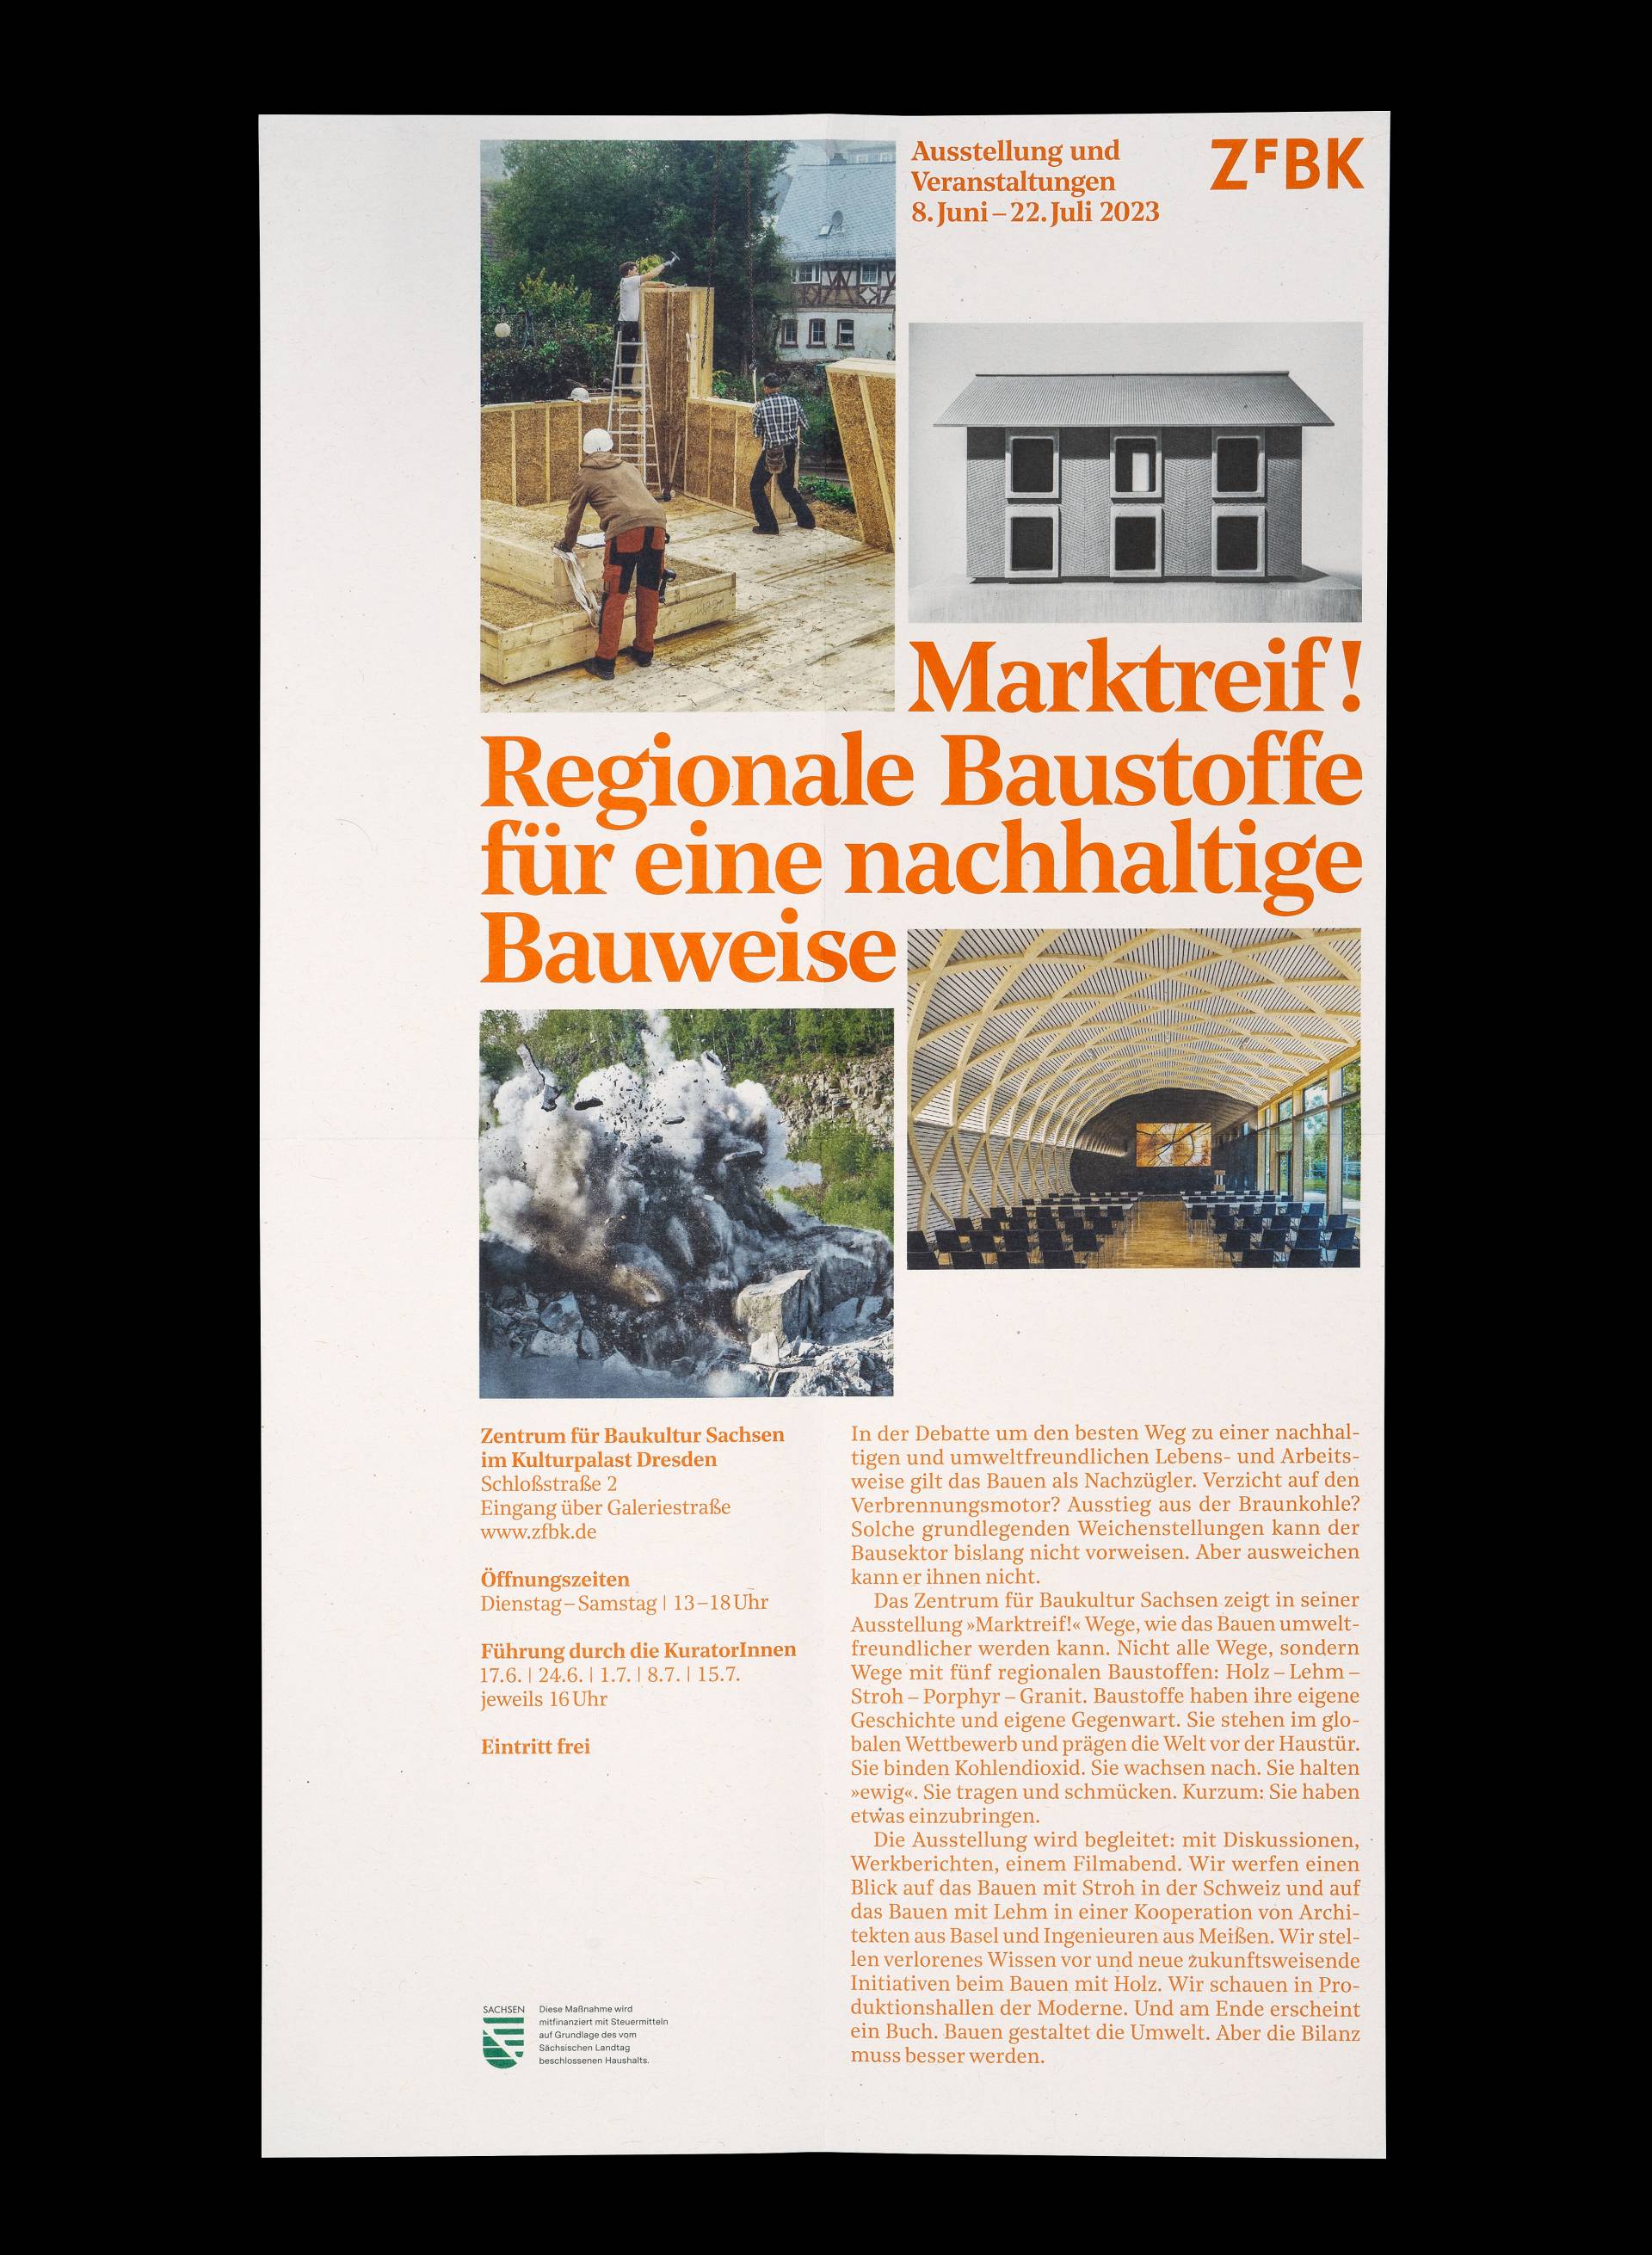 Visuelle Identität zur Ausstellung »Marktreif! Regionale Baustoffe für eine nachhaltige Bauweise« für das Zentrum für Baukultur Sachsen